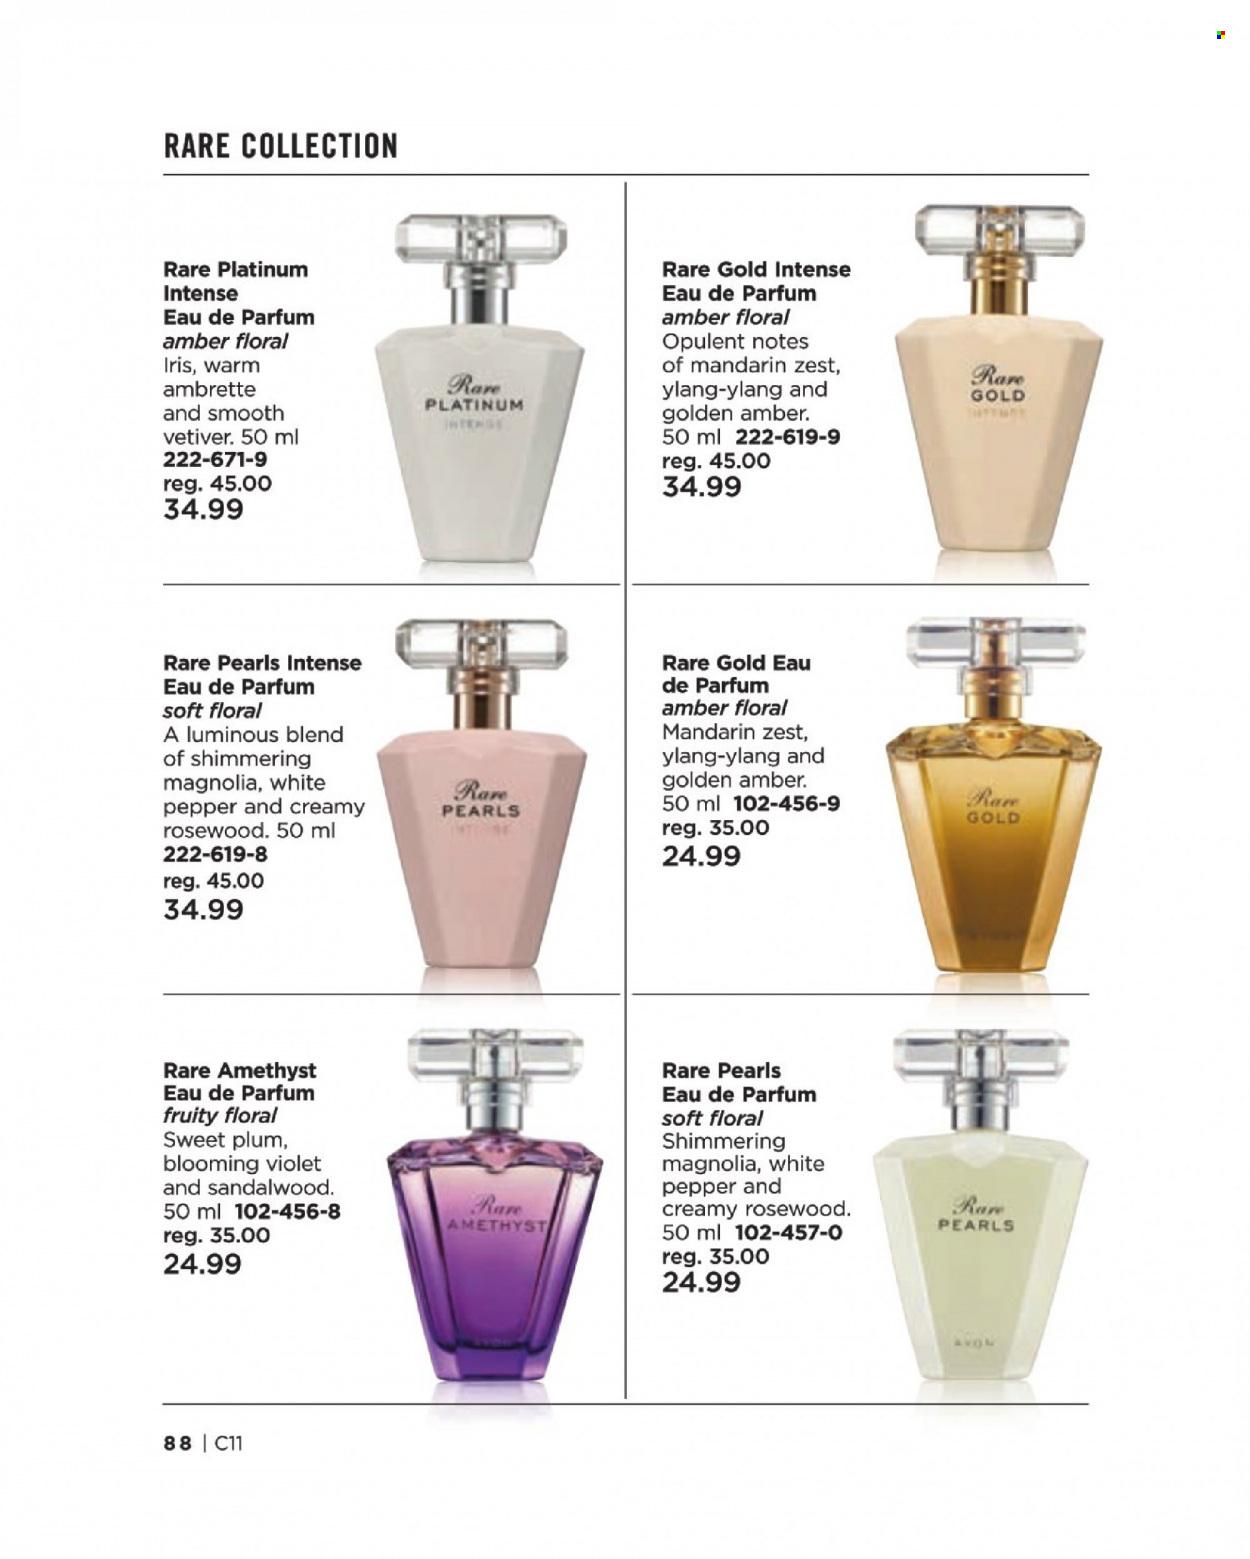 Circulaire Avon - Produits soldés - eau de parfum. Page 88.